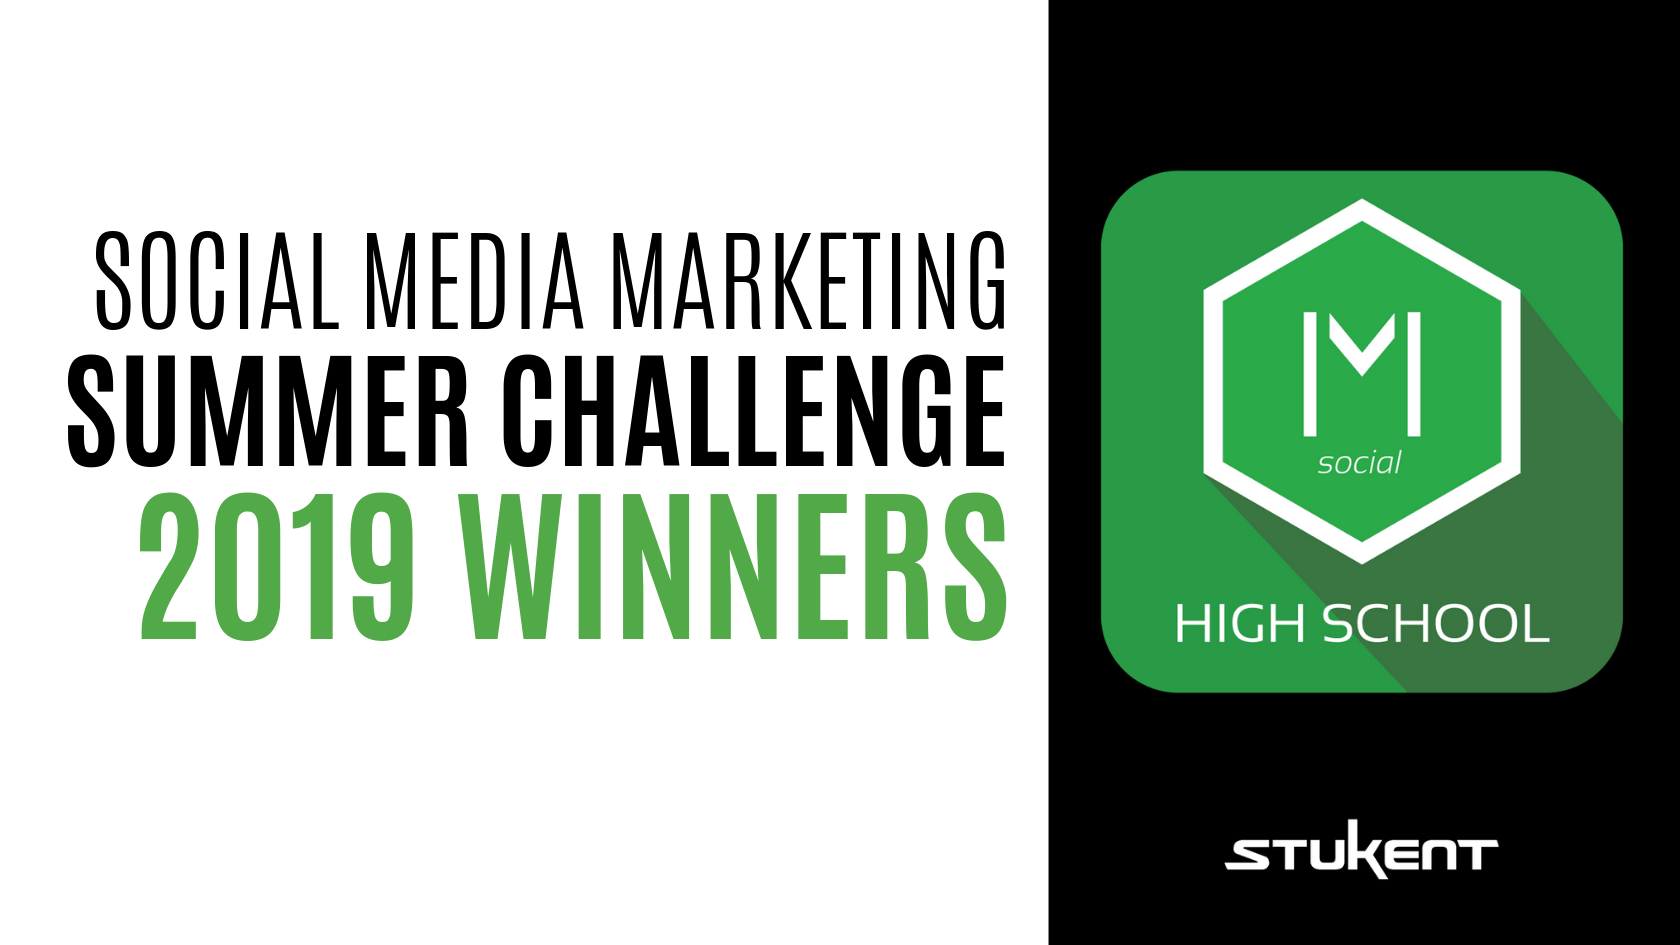 Social Media Marketing Summer Challenge 2019 Winners Header & Mimic Social Logo